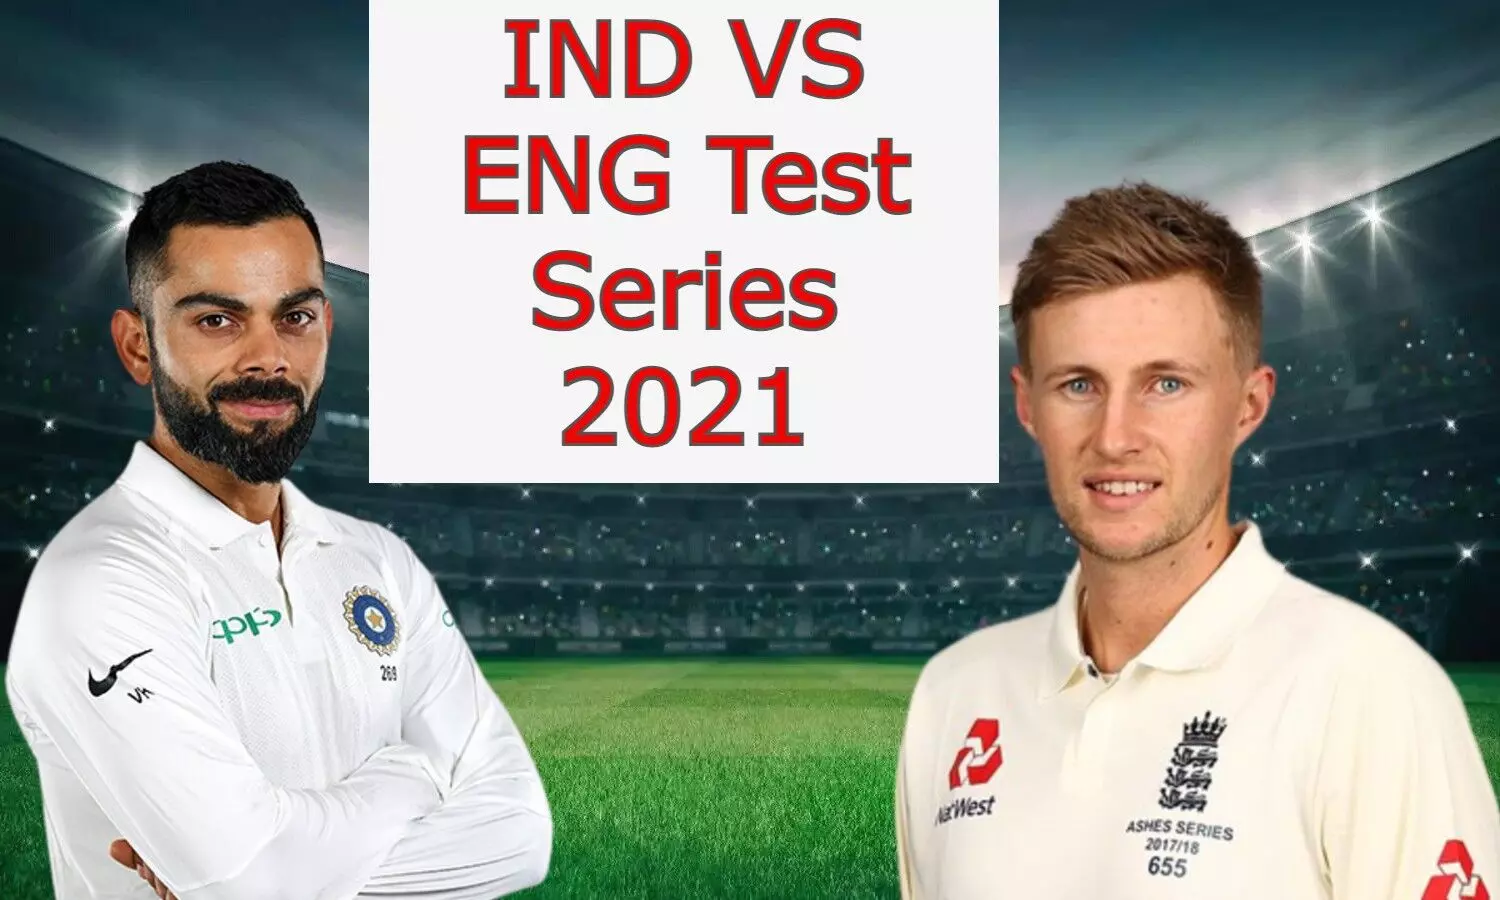 IND VS ENG Test Series: भारत और इंग्लैंड के बीच दूसरा टेस्ट आज, इन खिलाड़ियों को मिलेगी Playing 11 में जगह